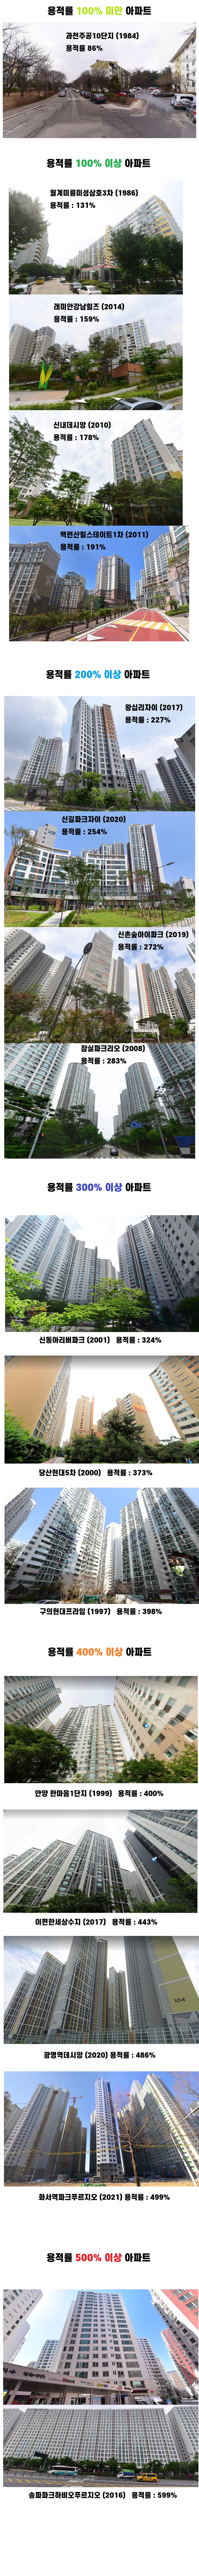 용적률에 따른 아파트 풍경 비교